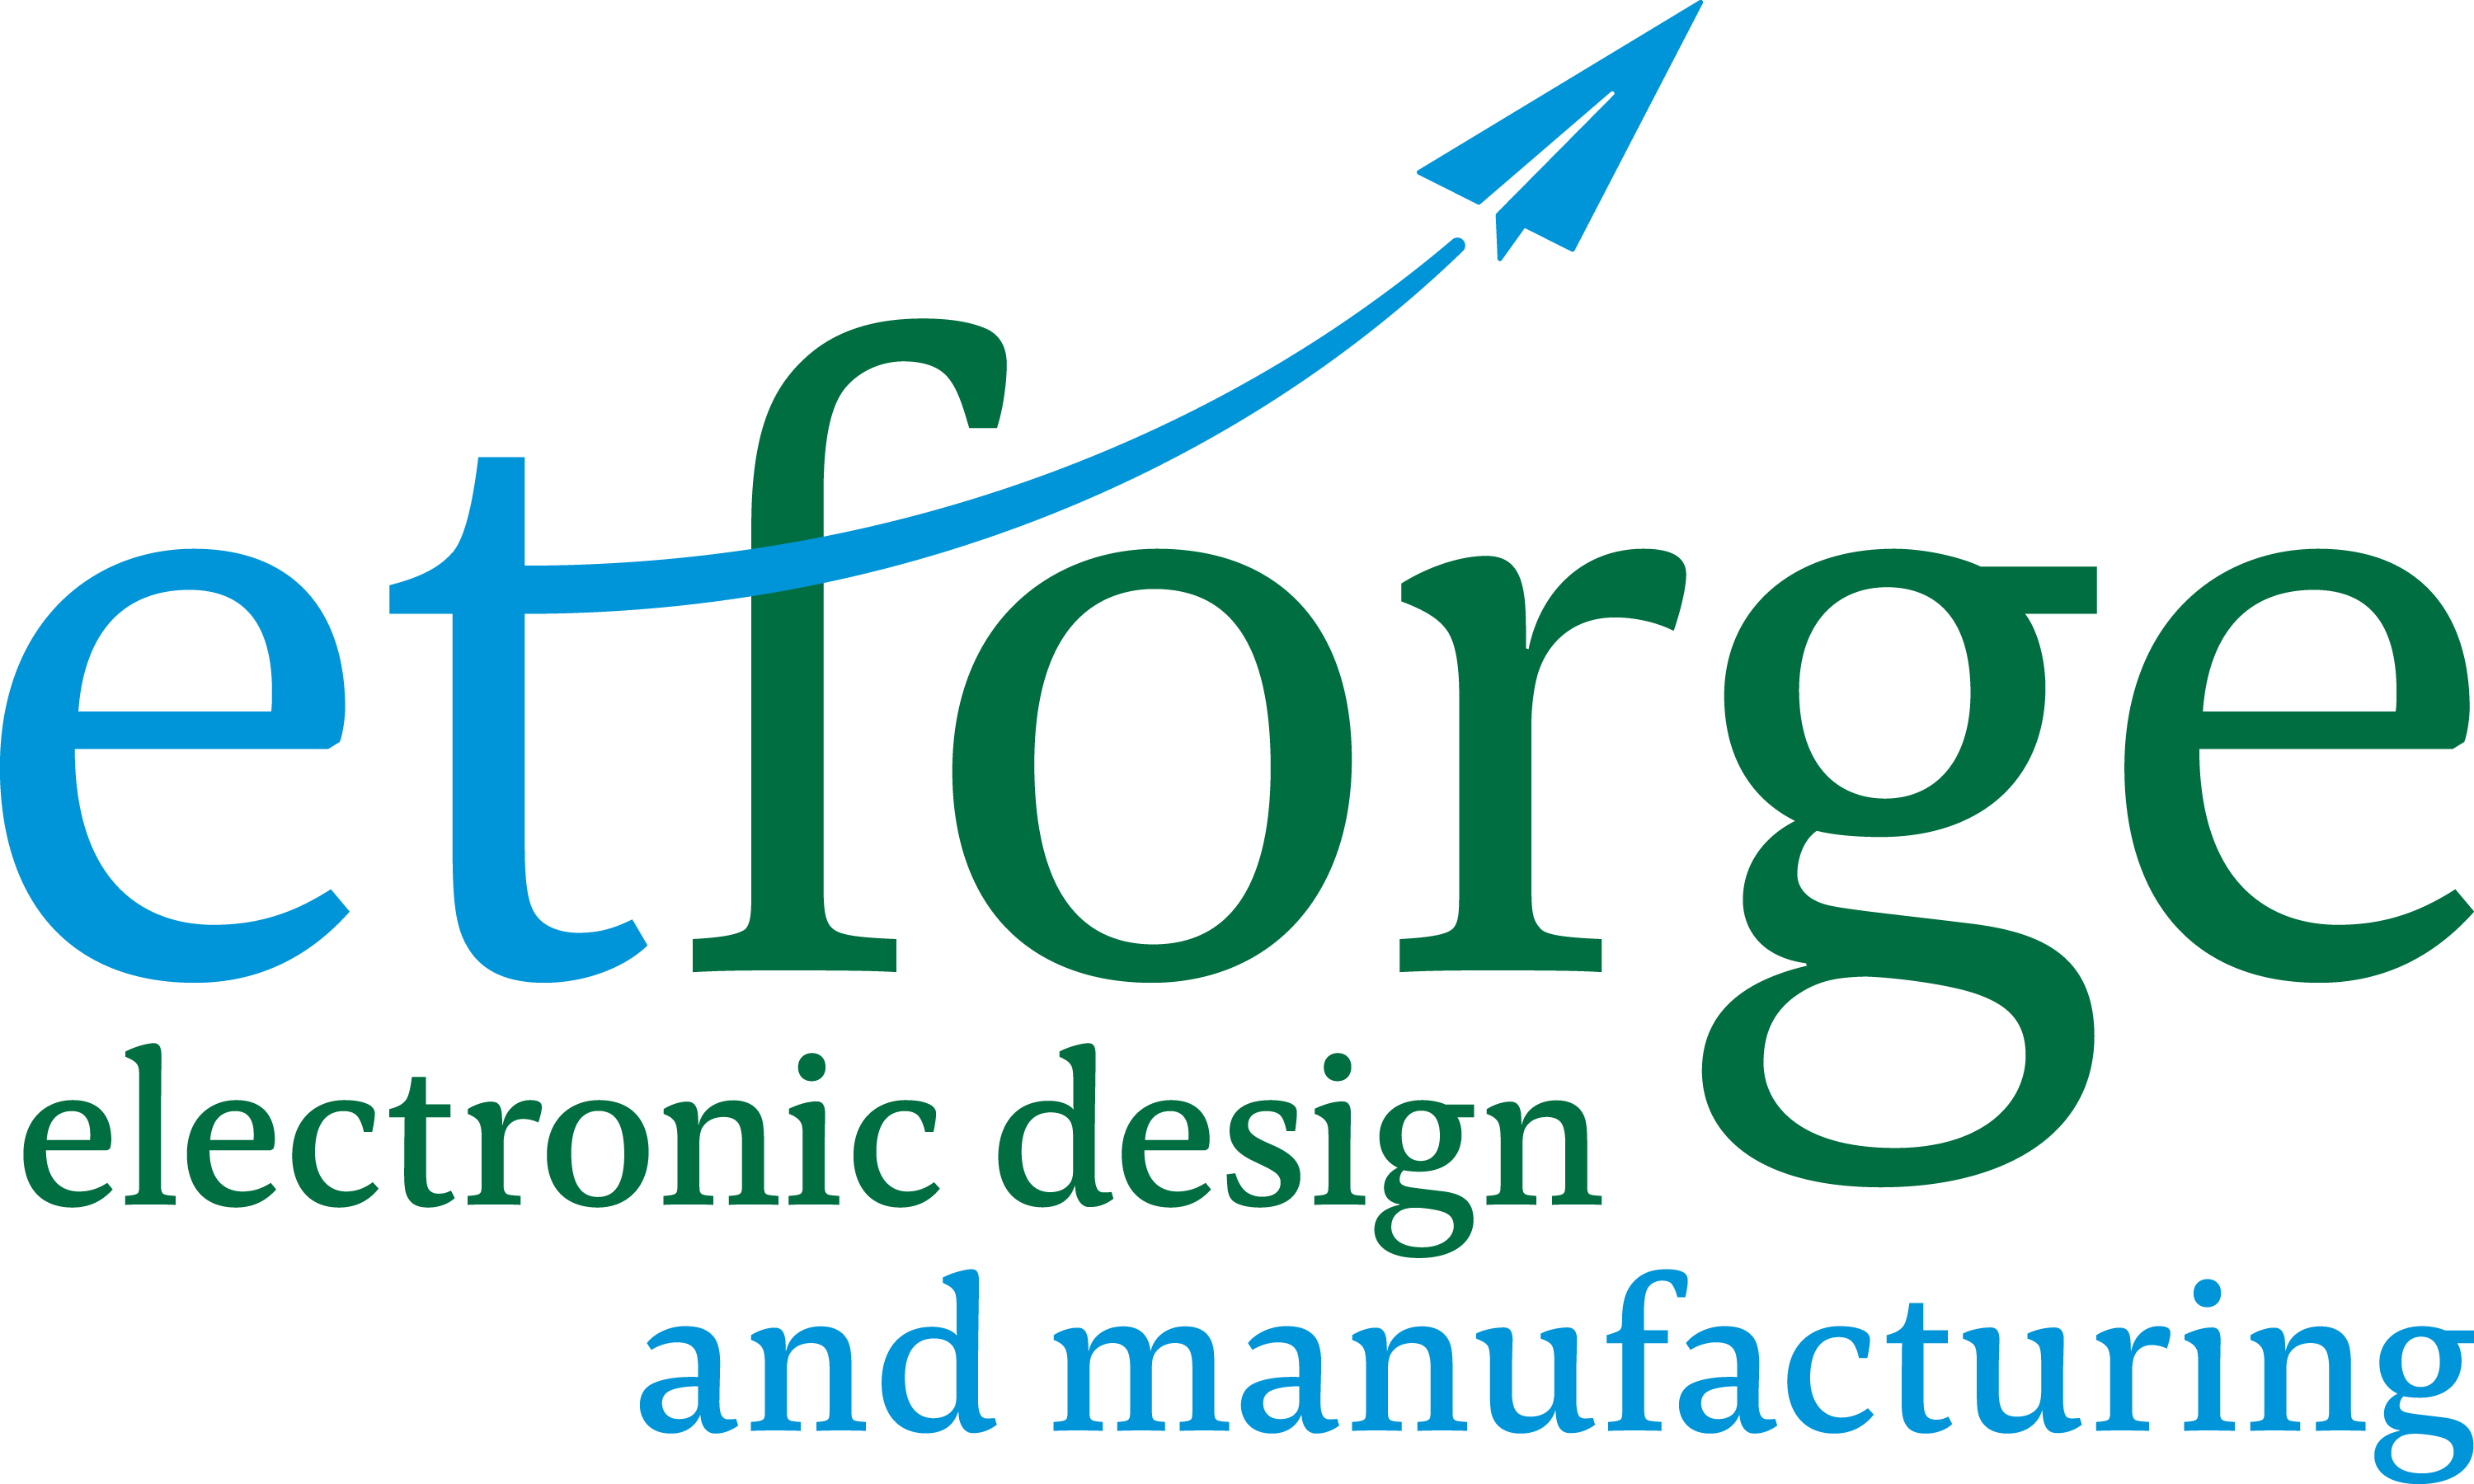 etforge GmbH